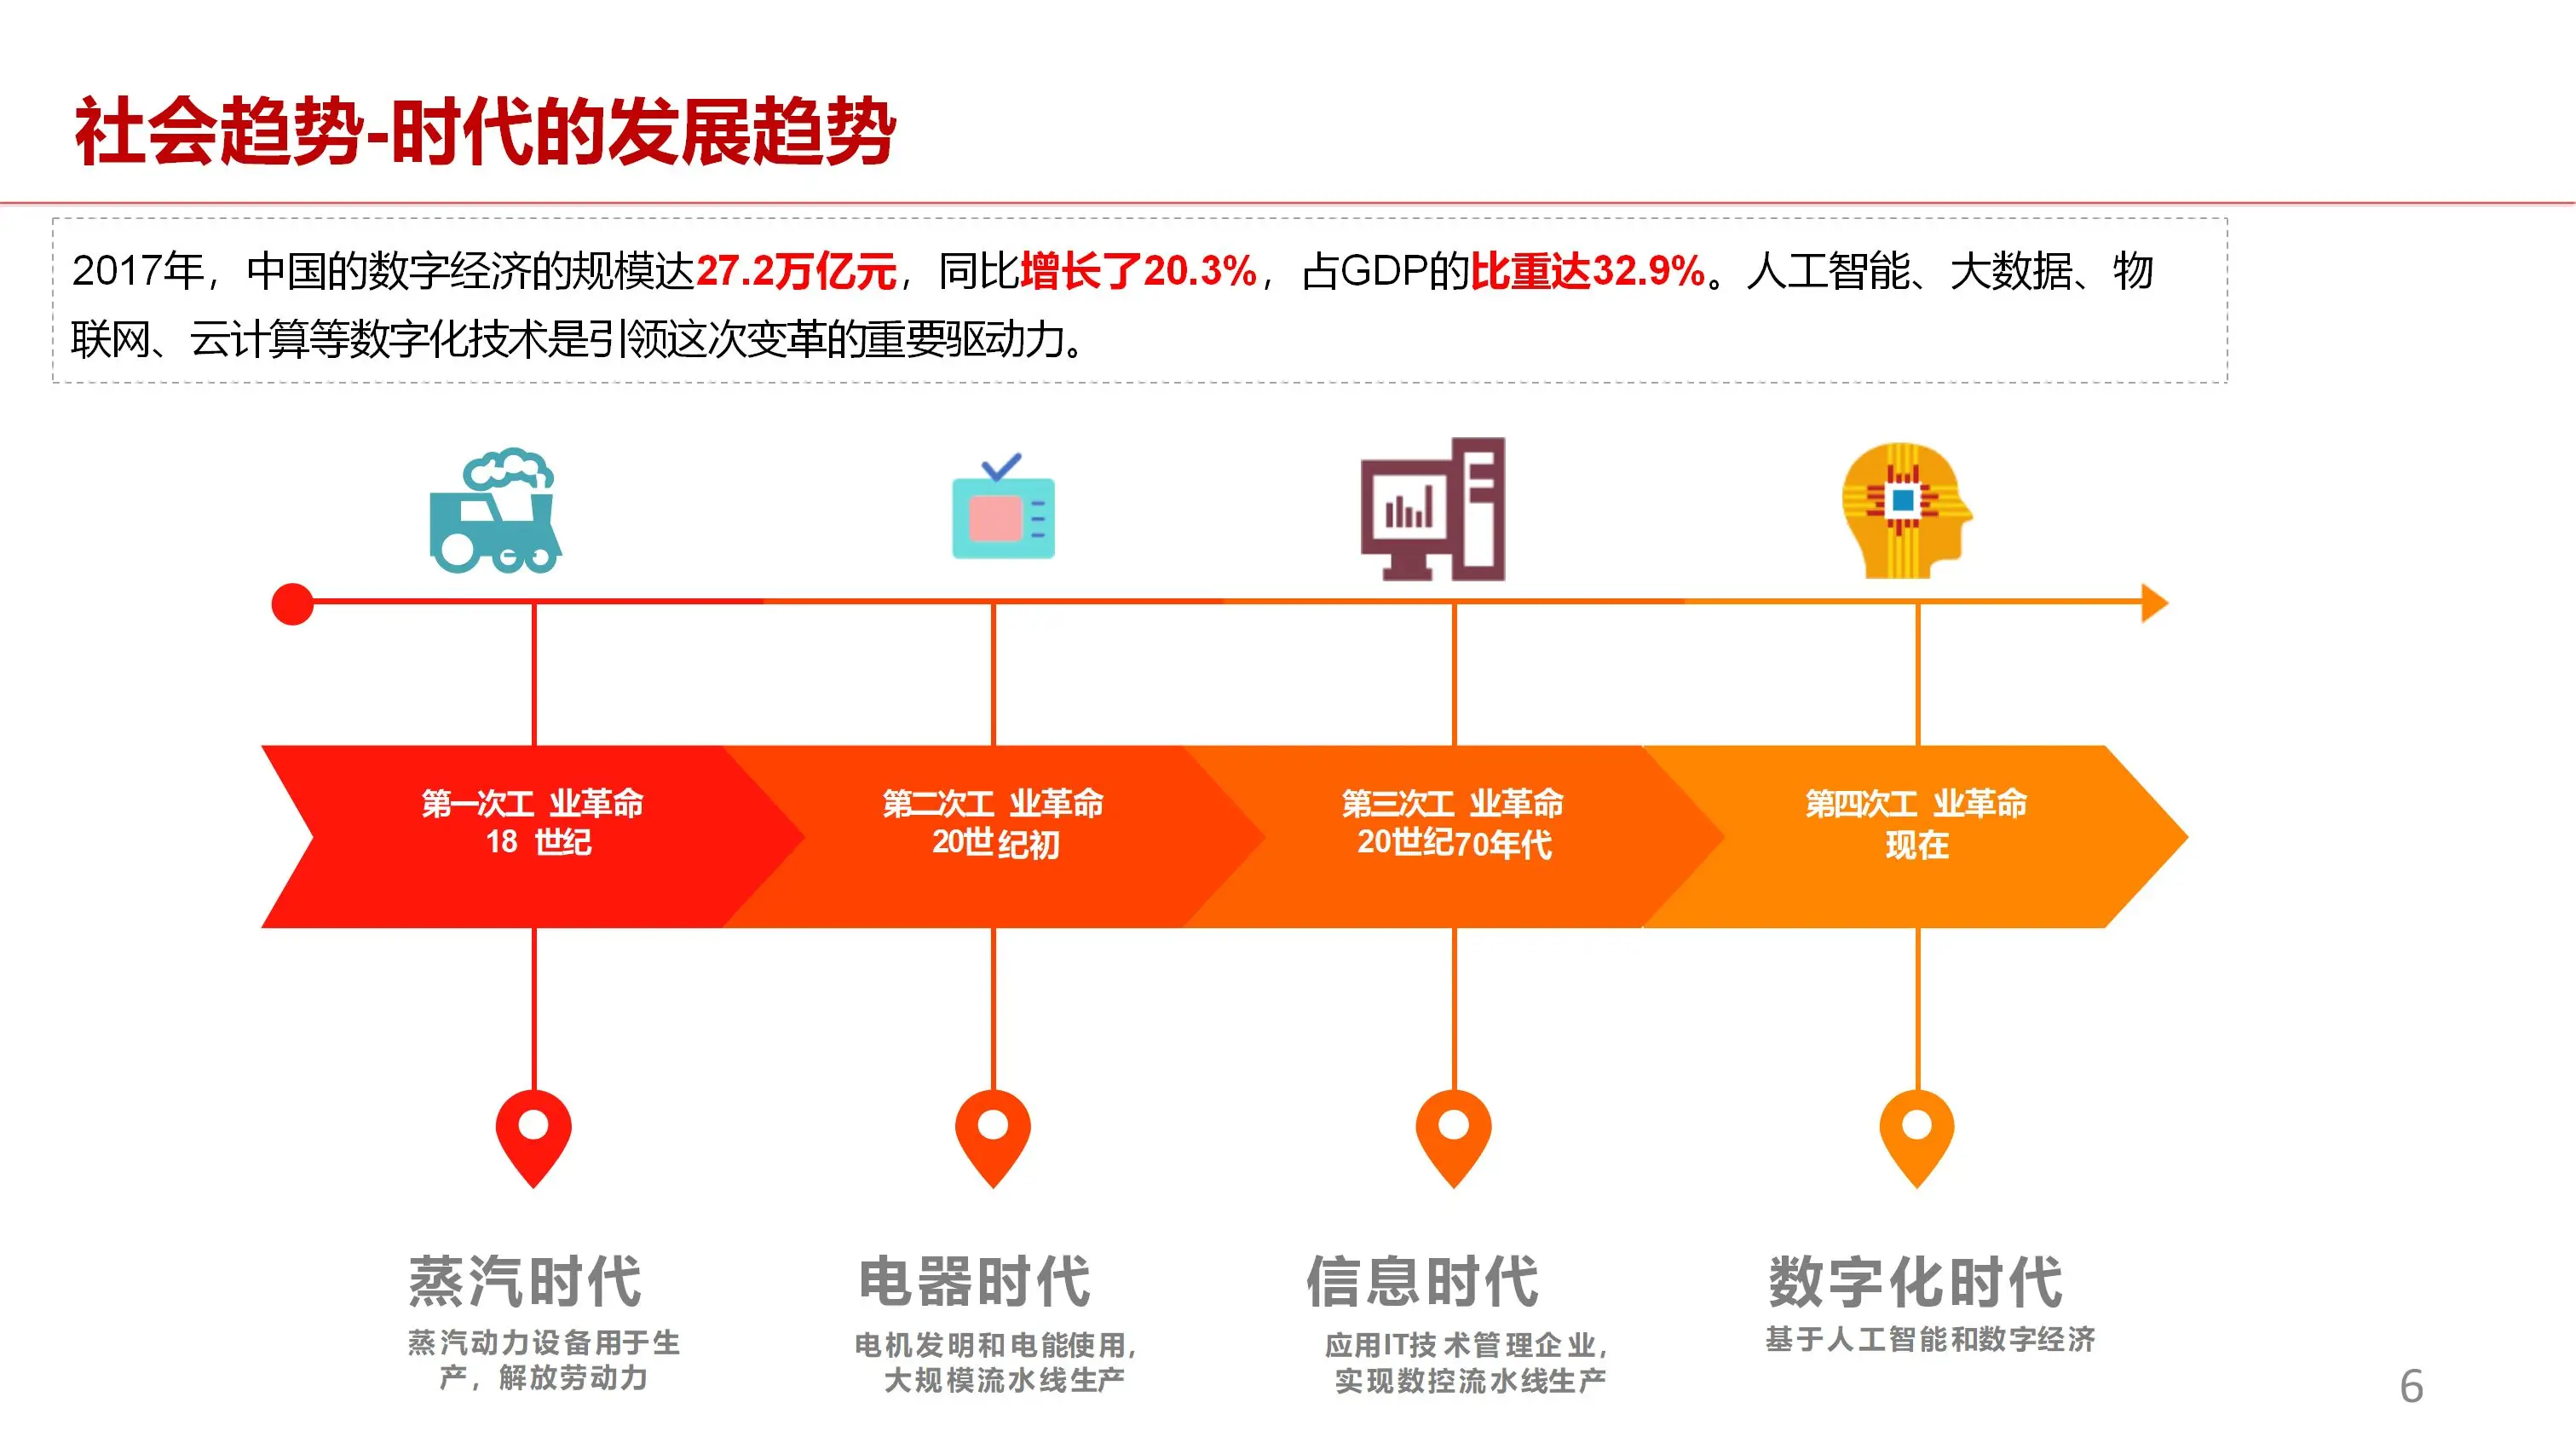 台湾地区 5G 网络试点工程：技术革新的巨大潜力与实践经验分享  第2张